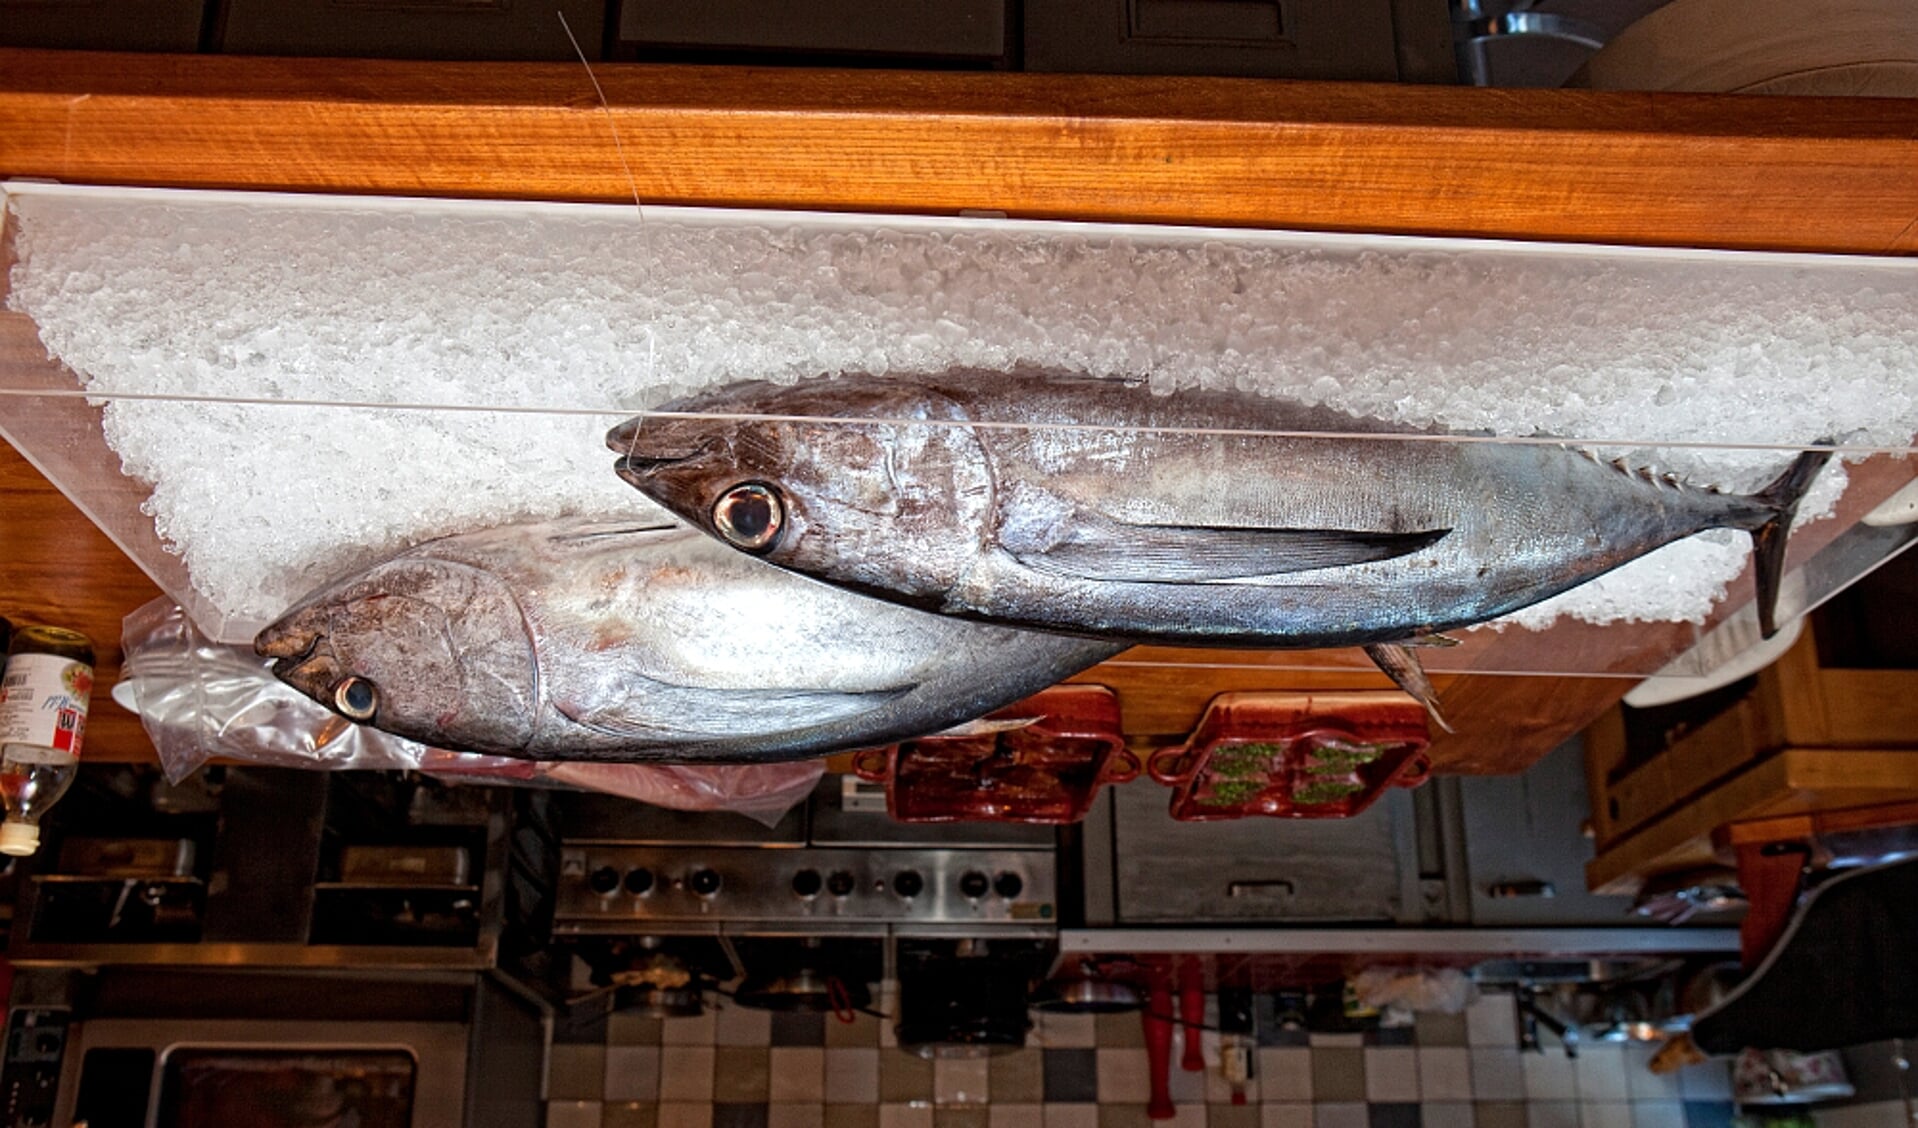  Tonijn was de Vis van de Maand in november 2016. Voor december is de sint-jakobsschelp Vis van de Maand.